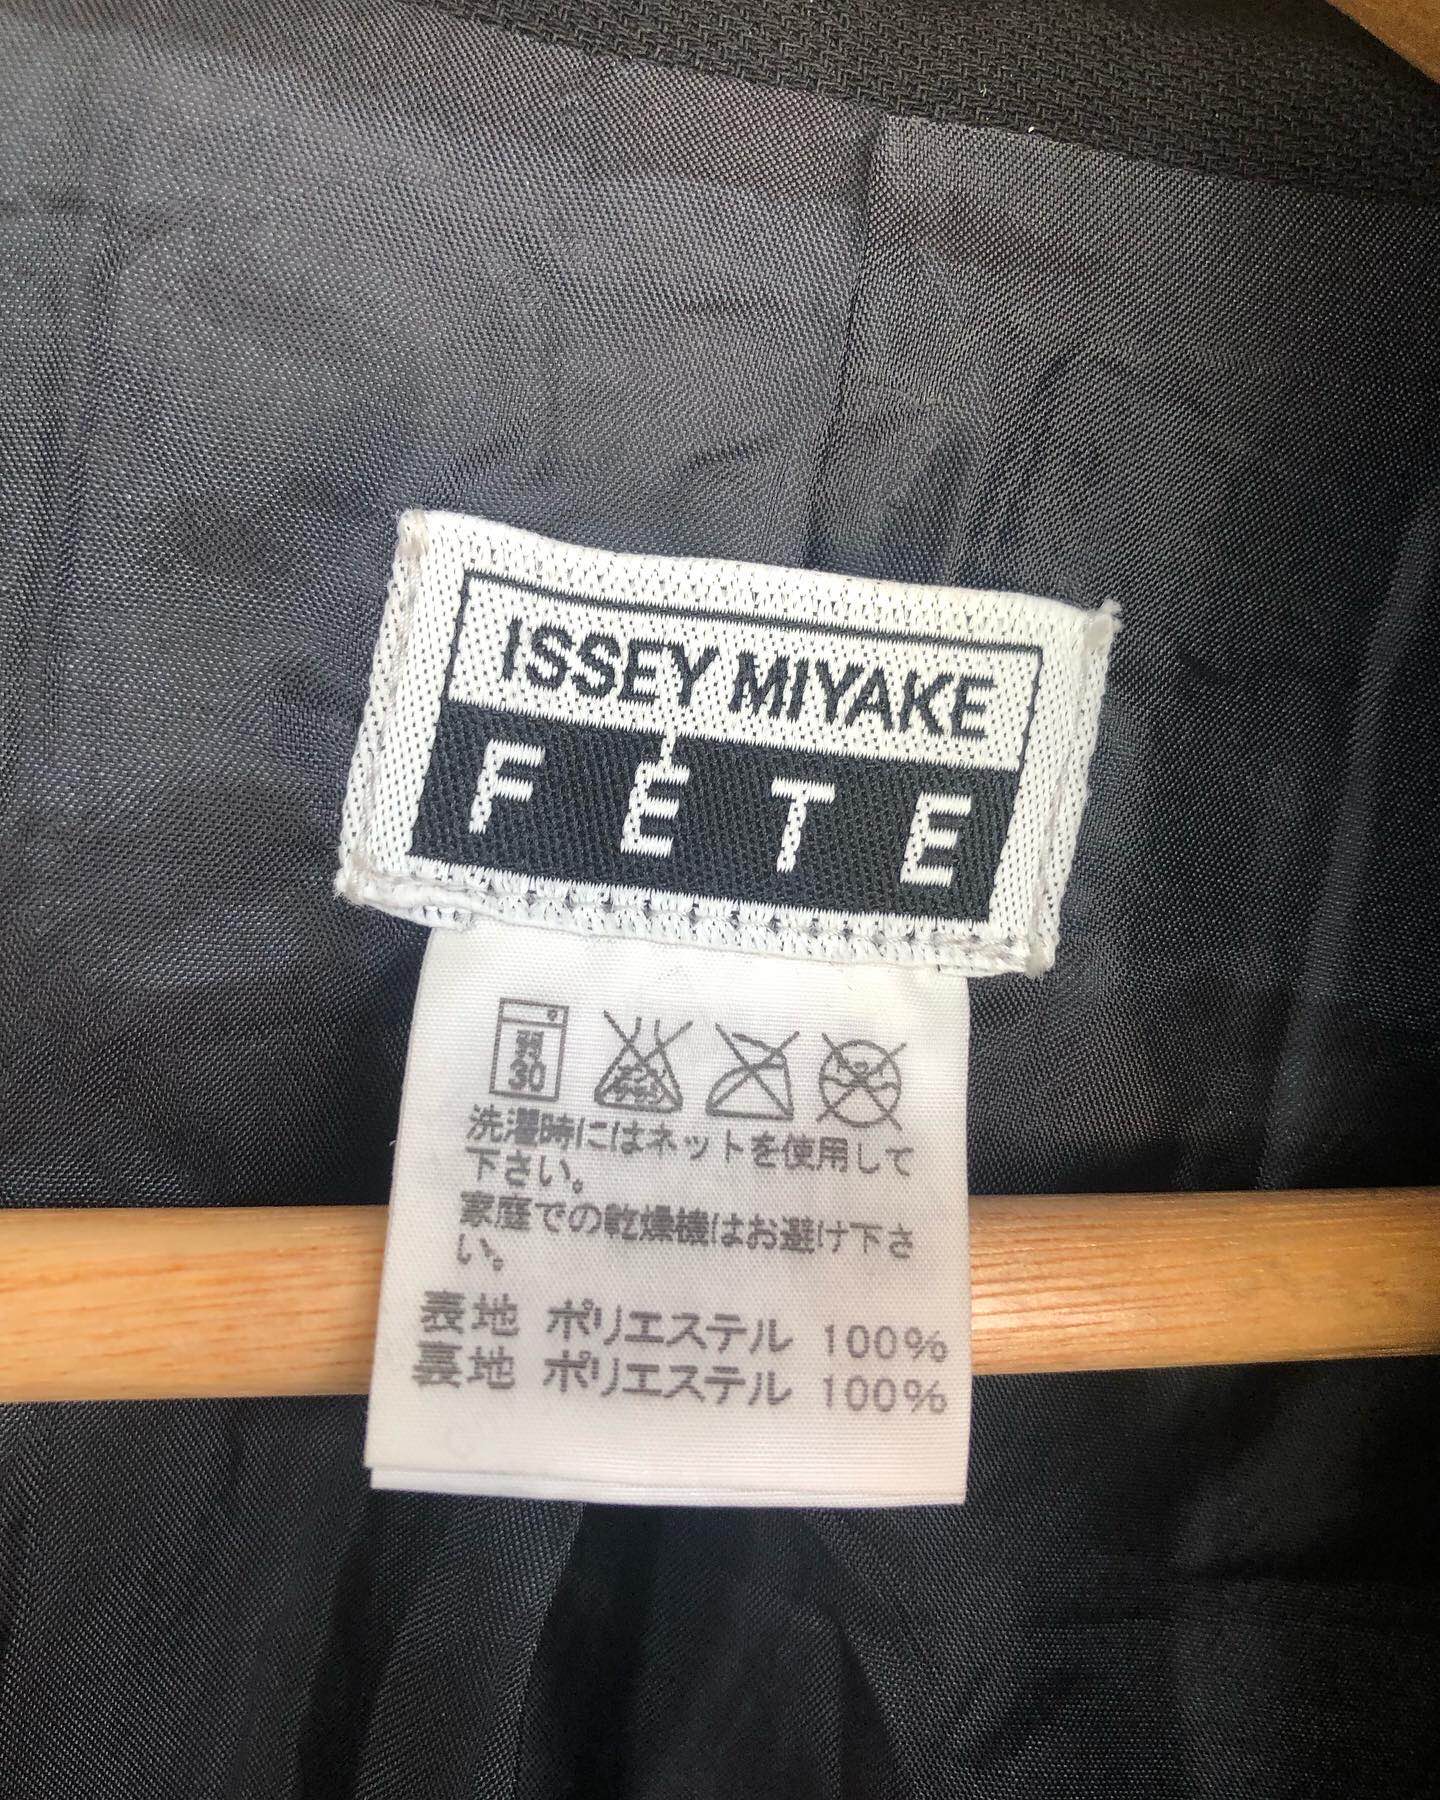 Issey miyake Pleated Black Coat Women - 4